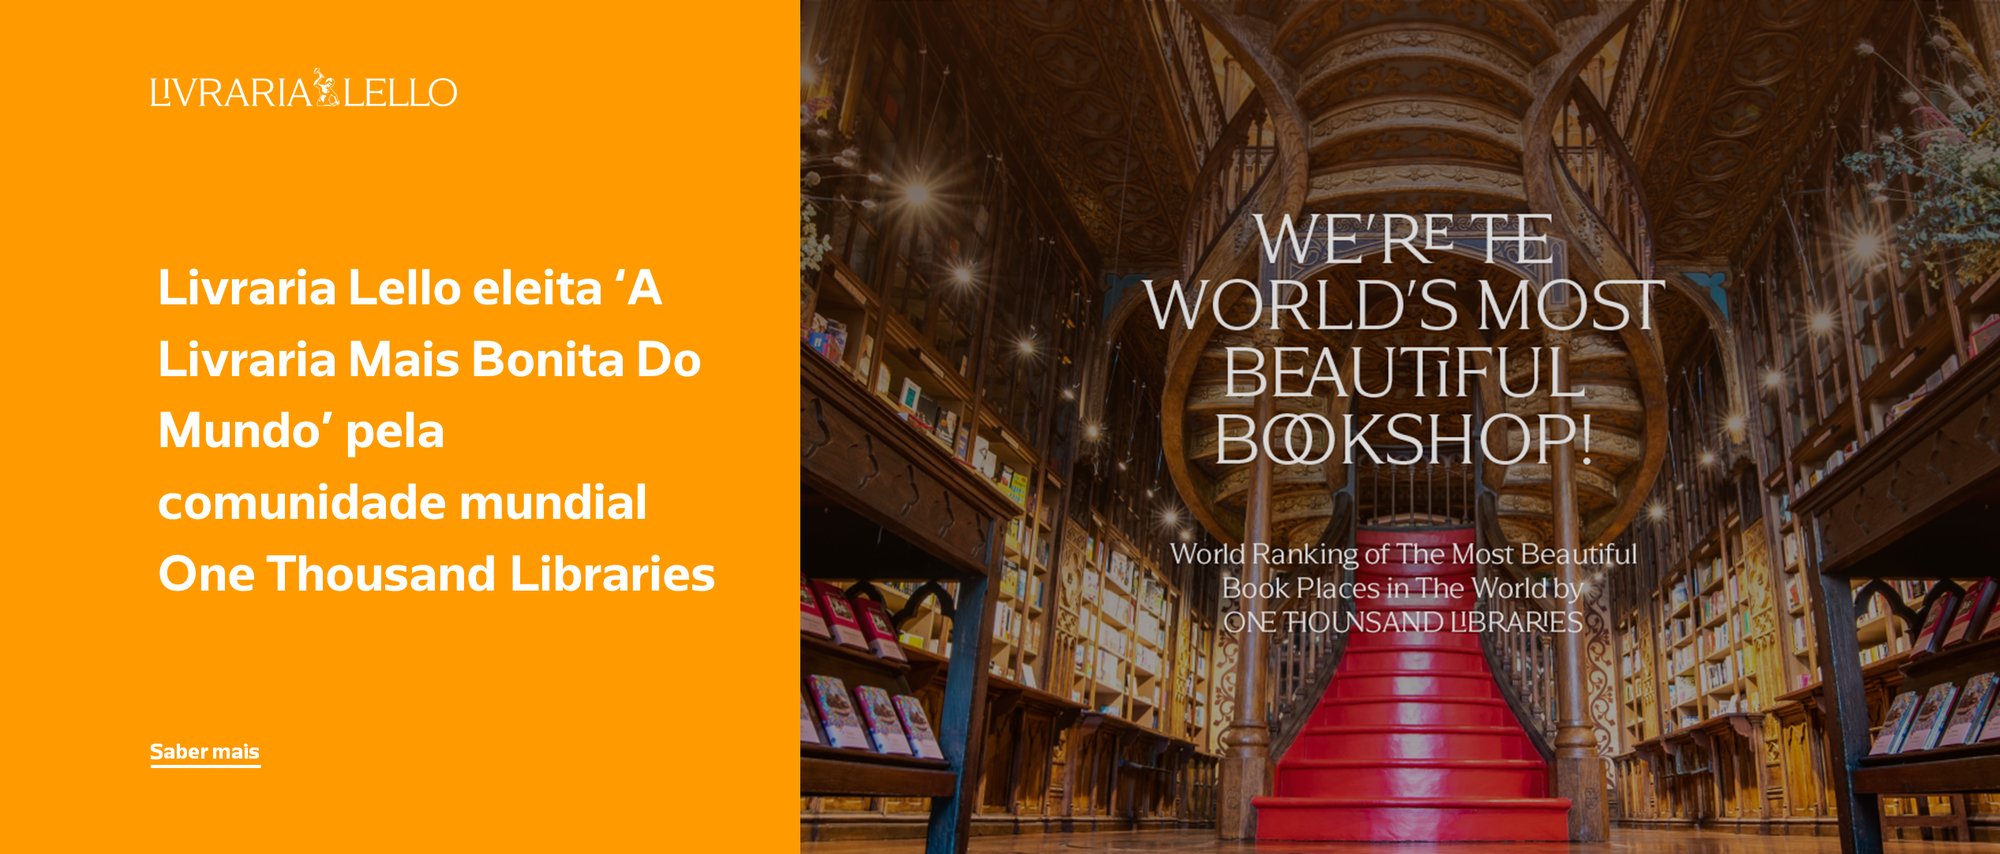 Livraria Lello eleita ‘A Livraria Mais Bonita Do Mundo’ pela comunidade mundial One Thousand Libraries